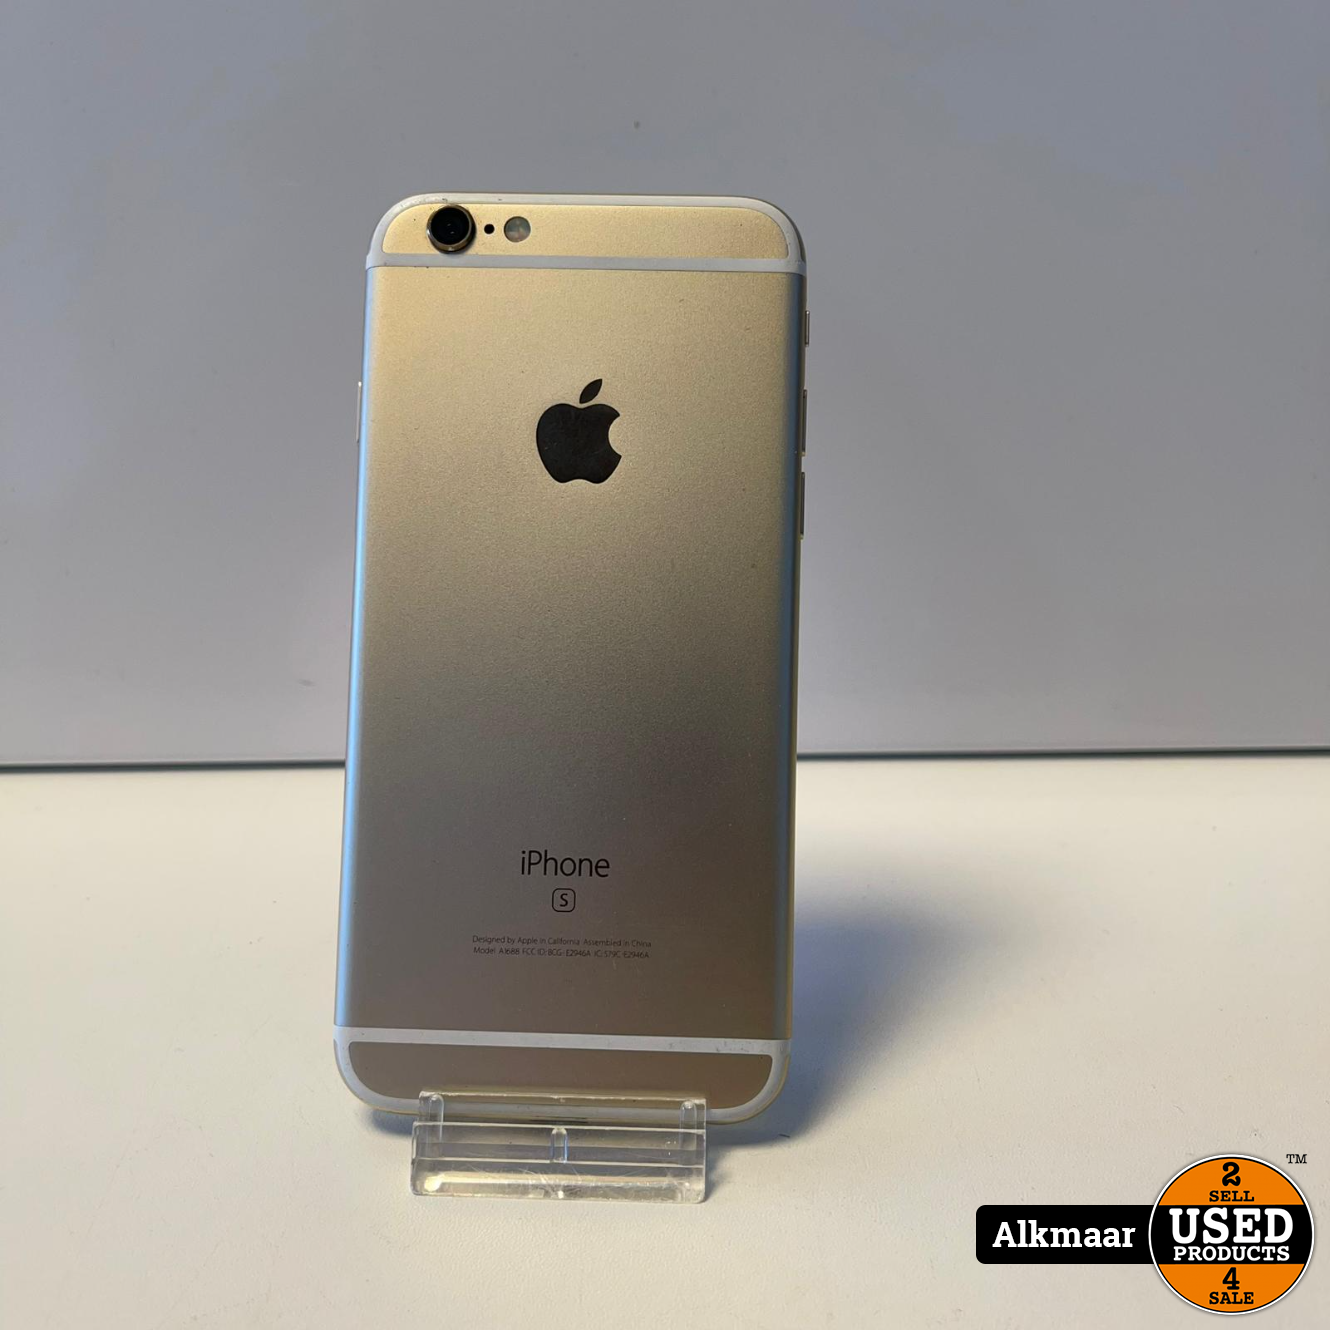 Vol Glad artikel Apple iPhone 6s 16GB Goud | 100% | In nette staat - Used Products Alkmaar